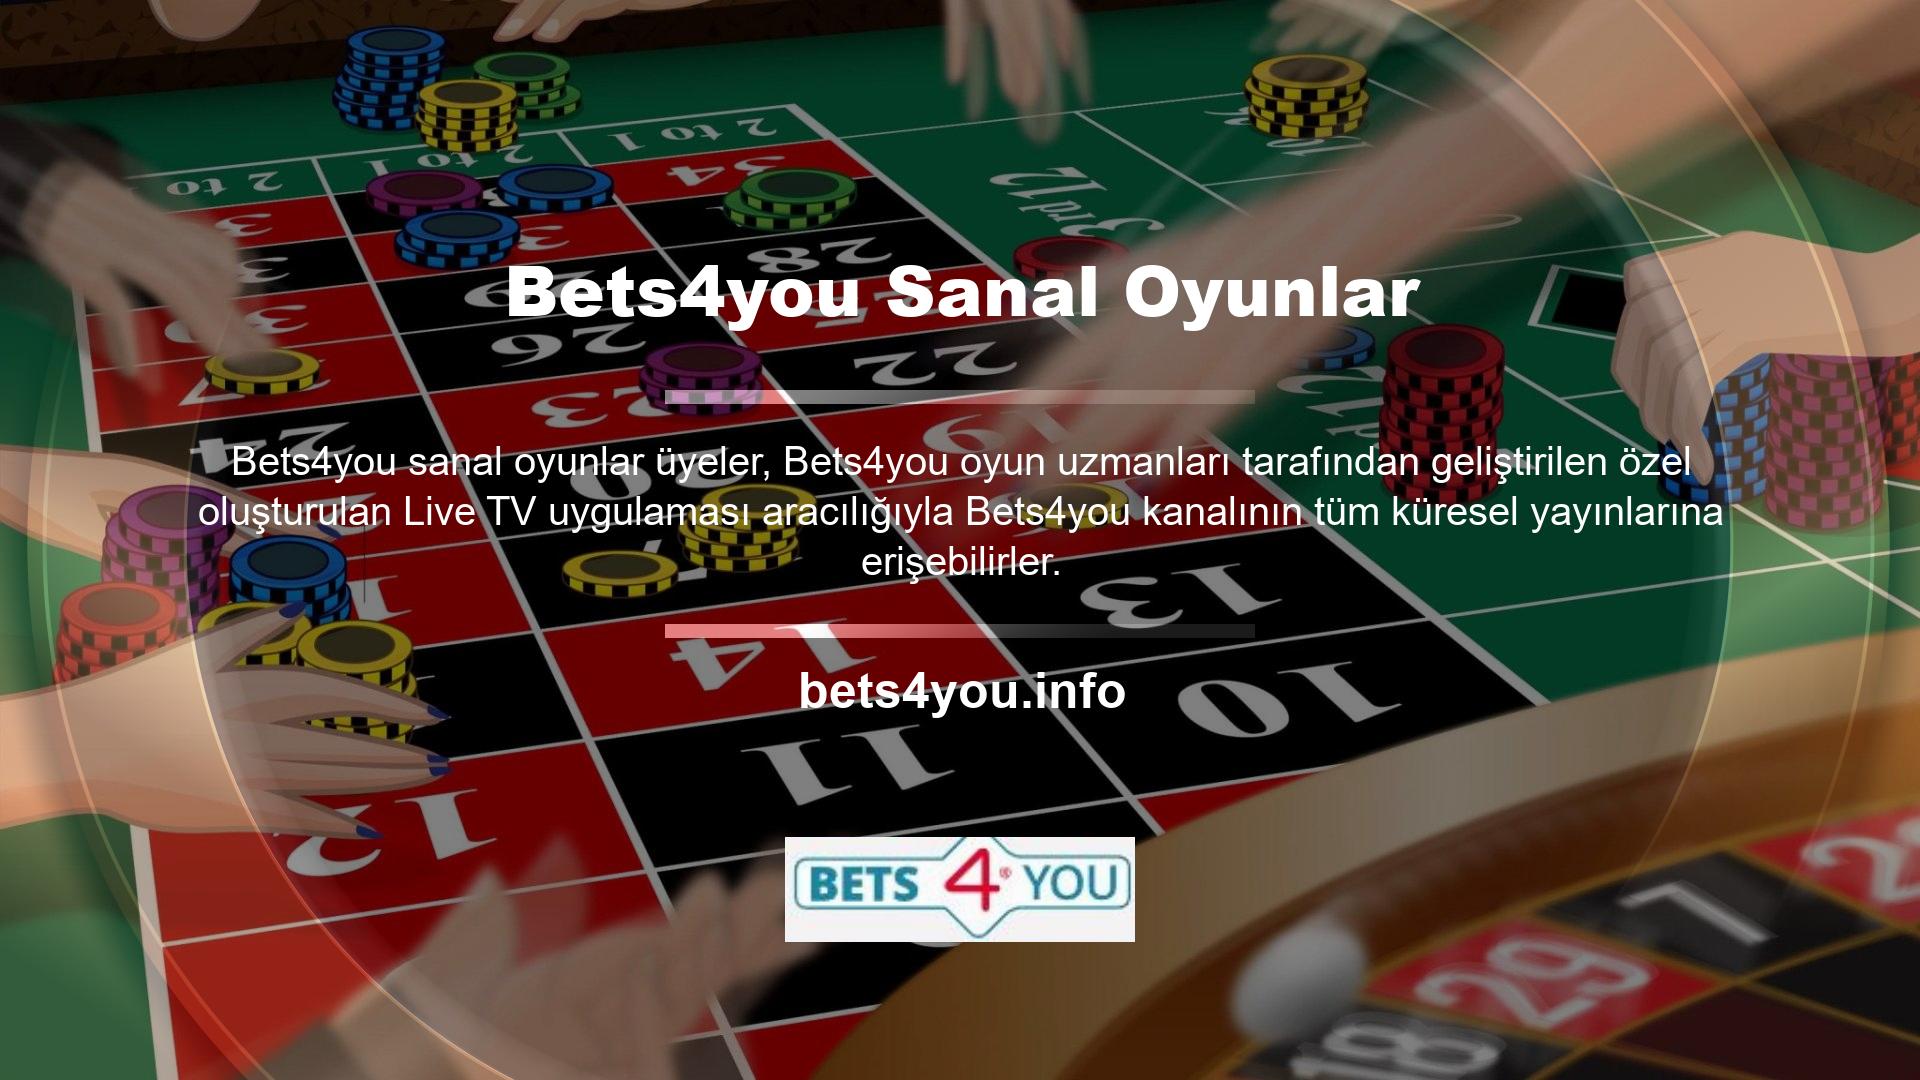 Ayrıca Canlı TV uygulaması, ücretli hizmetler sunan yayın platformları da dahil olmak üzere çeşitli ülkelerdeki Bets4you kanallarından programlar sunmaktadır